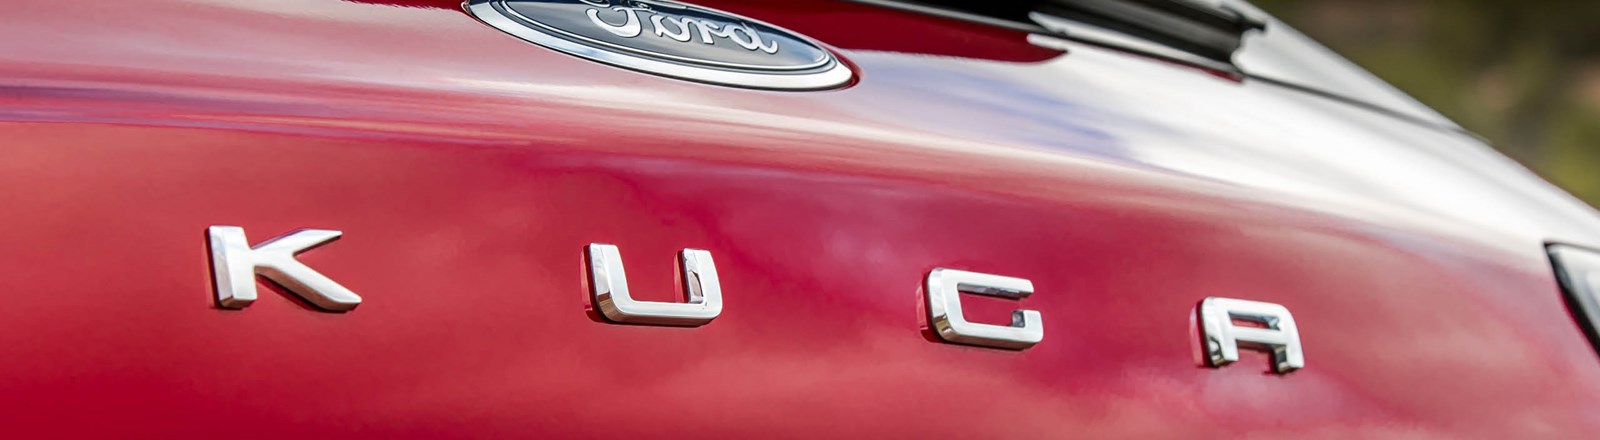 Ford Kuga - klimavenlige firmabiler - Fleggaard Leasing.jpg